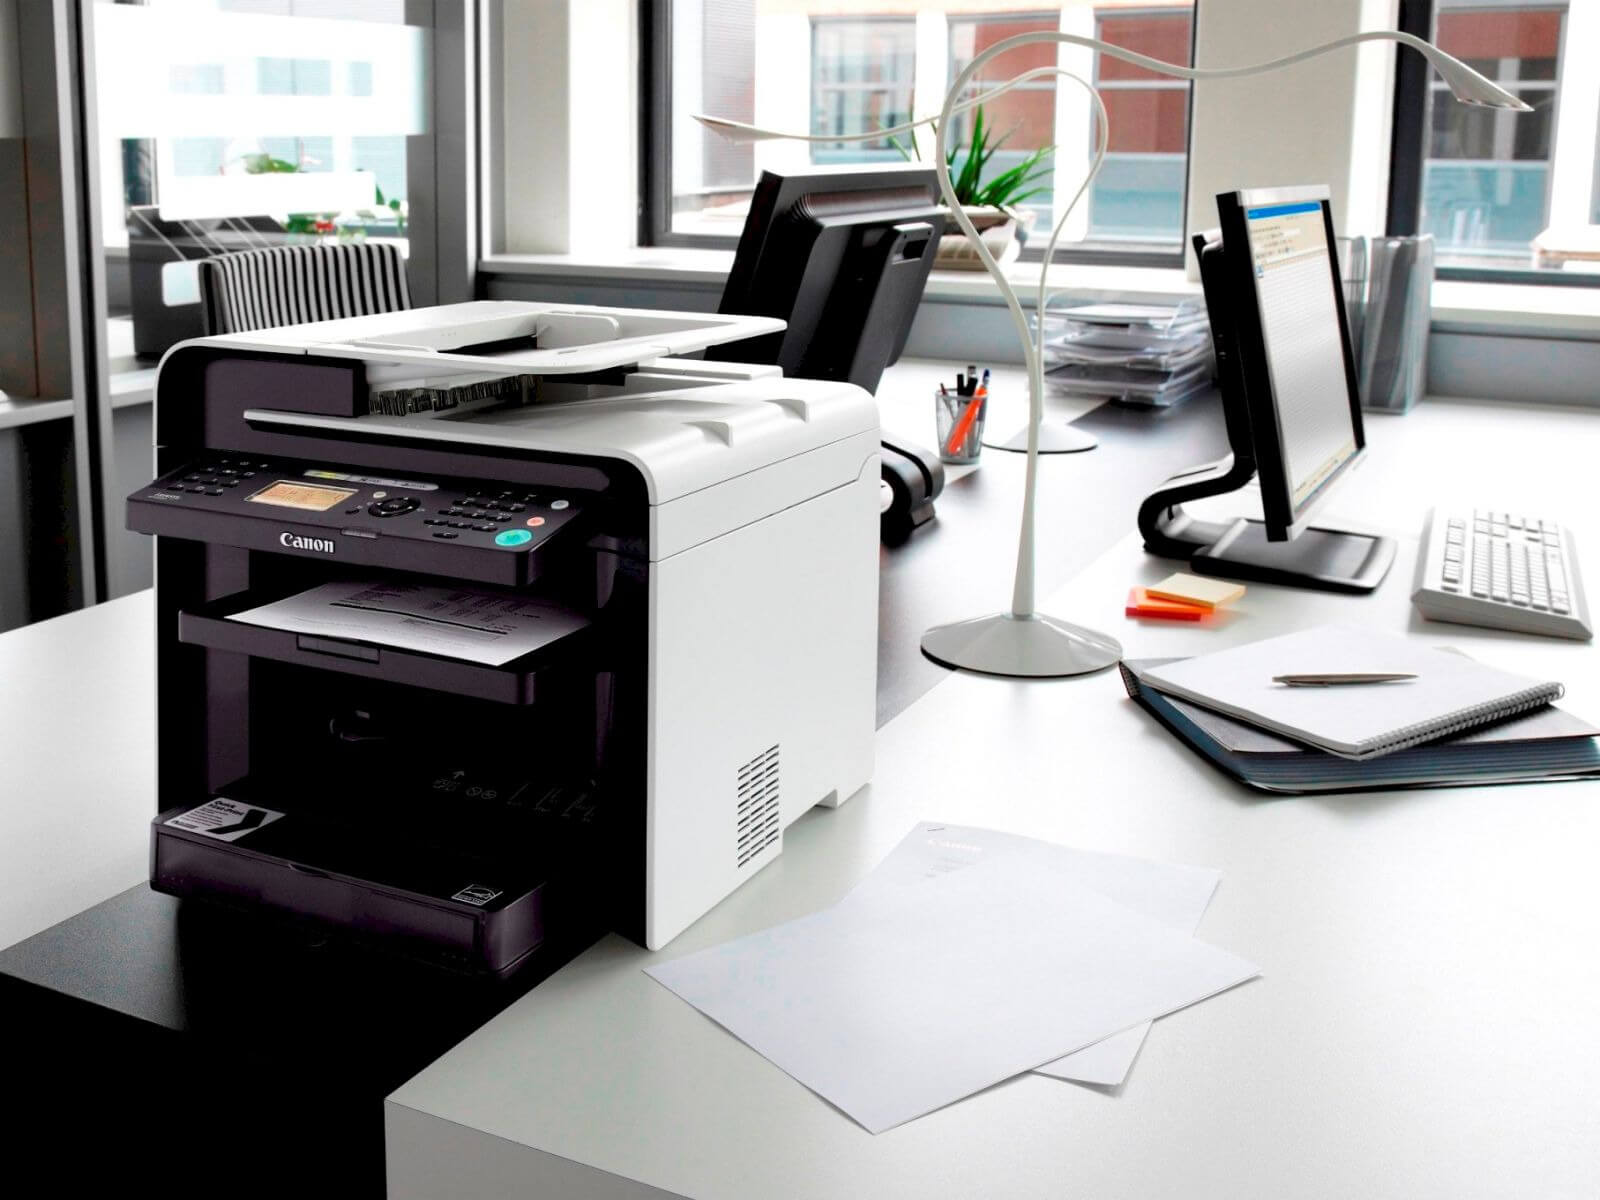 Thiết bị photocopy, in ấn rất quan trọng trong phục vụ văn phòng